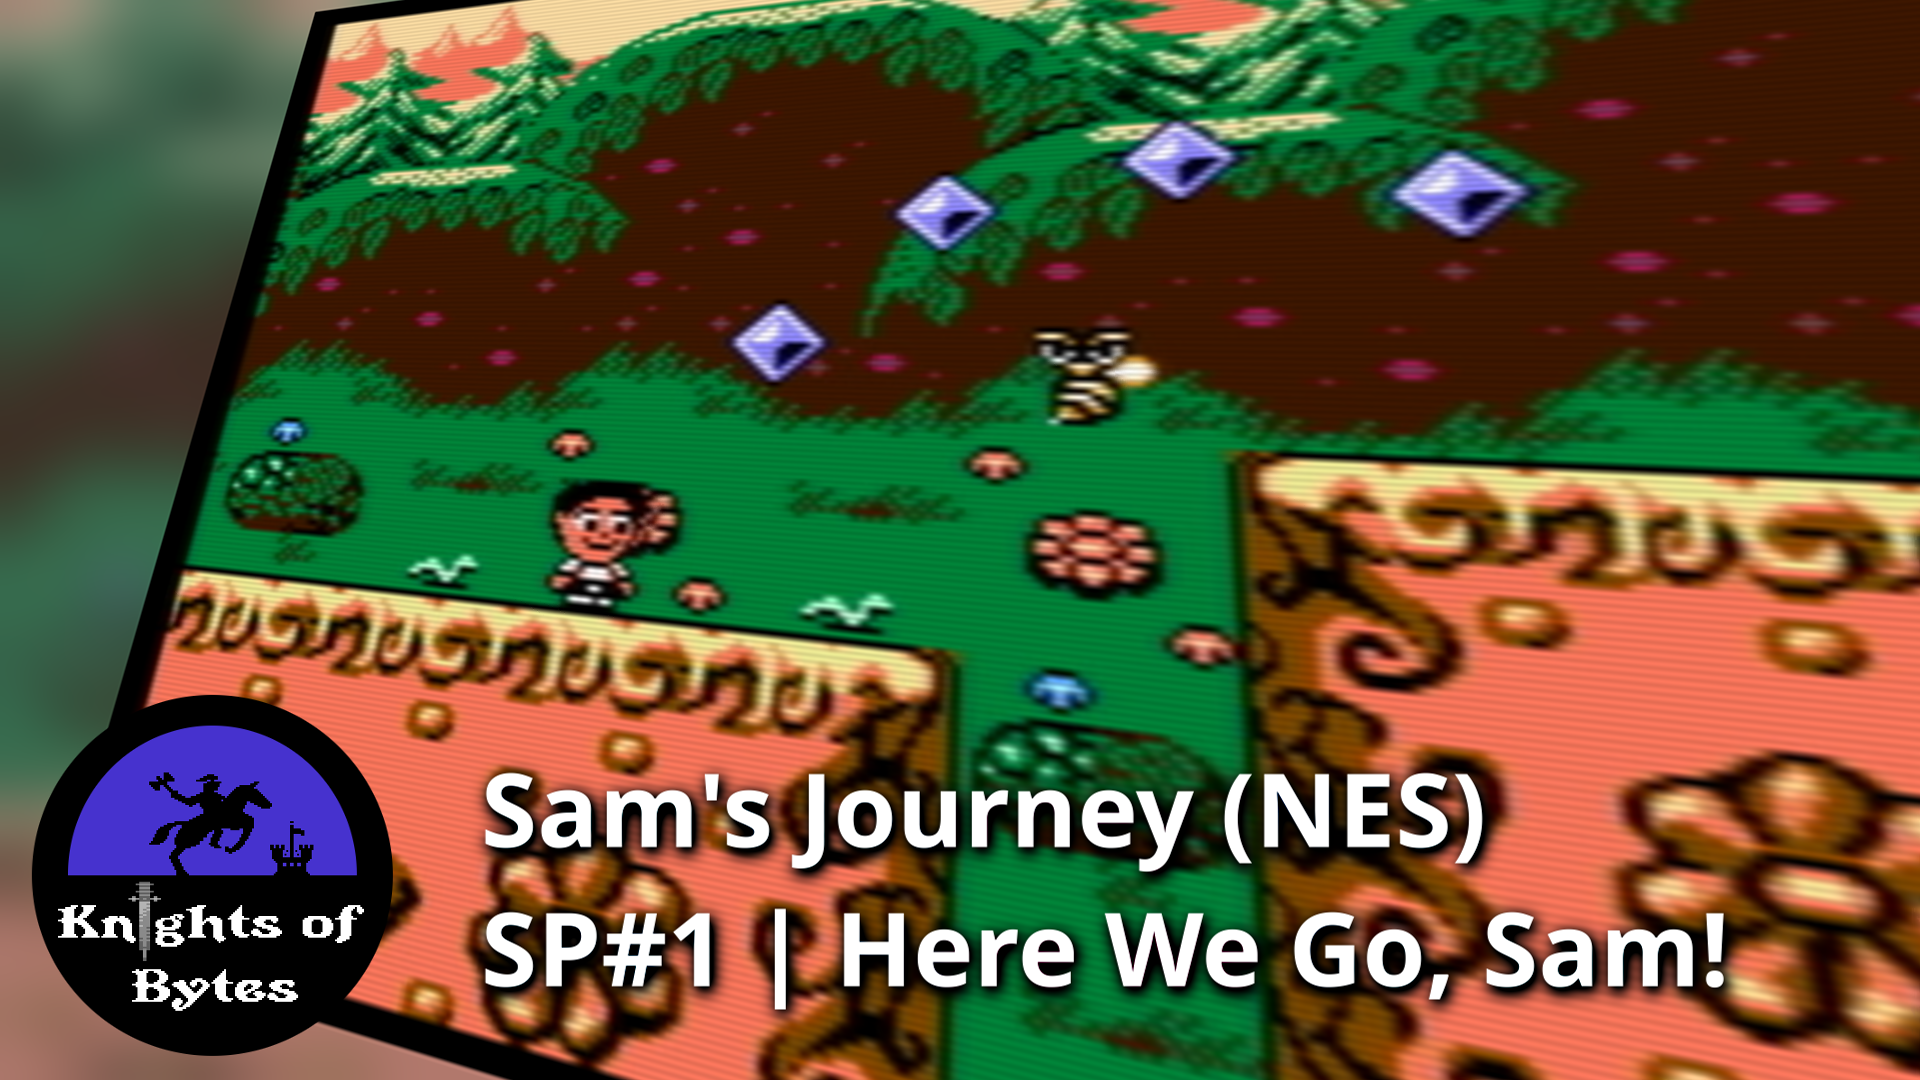 Sam's Journey NES Sneak Peek 1 Poster